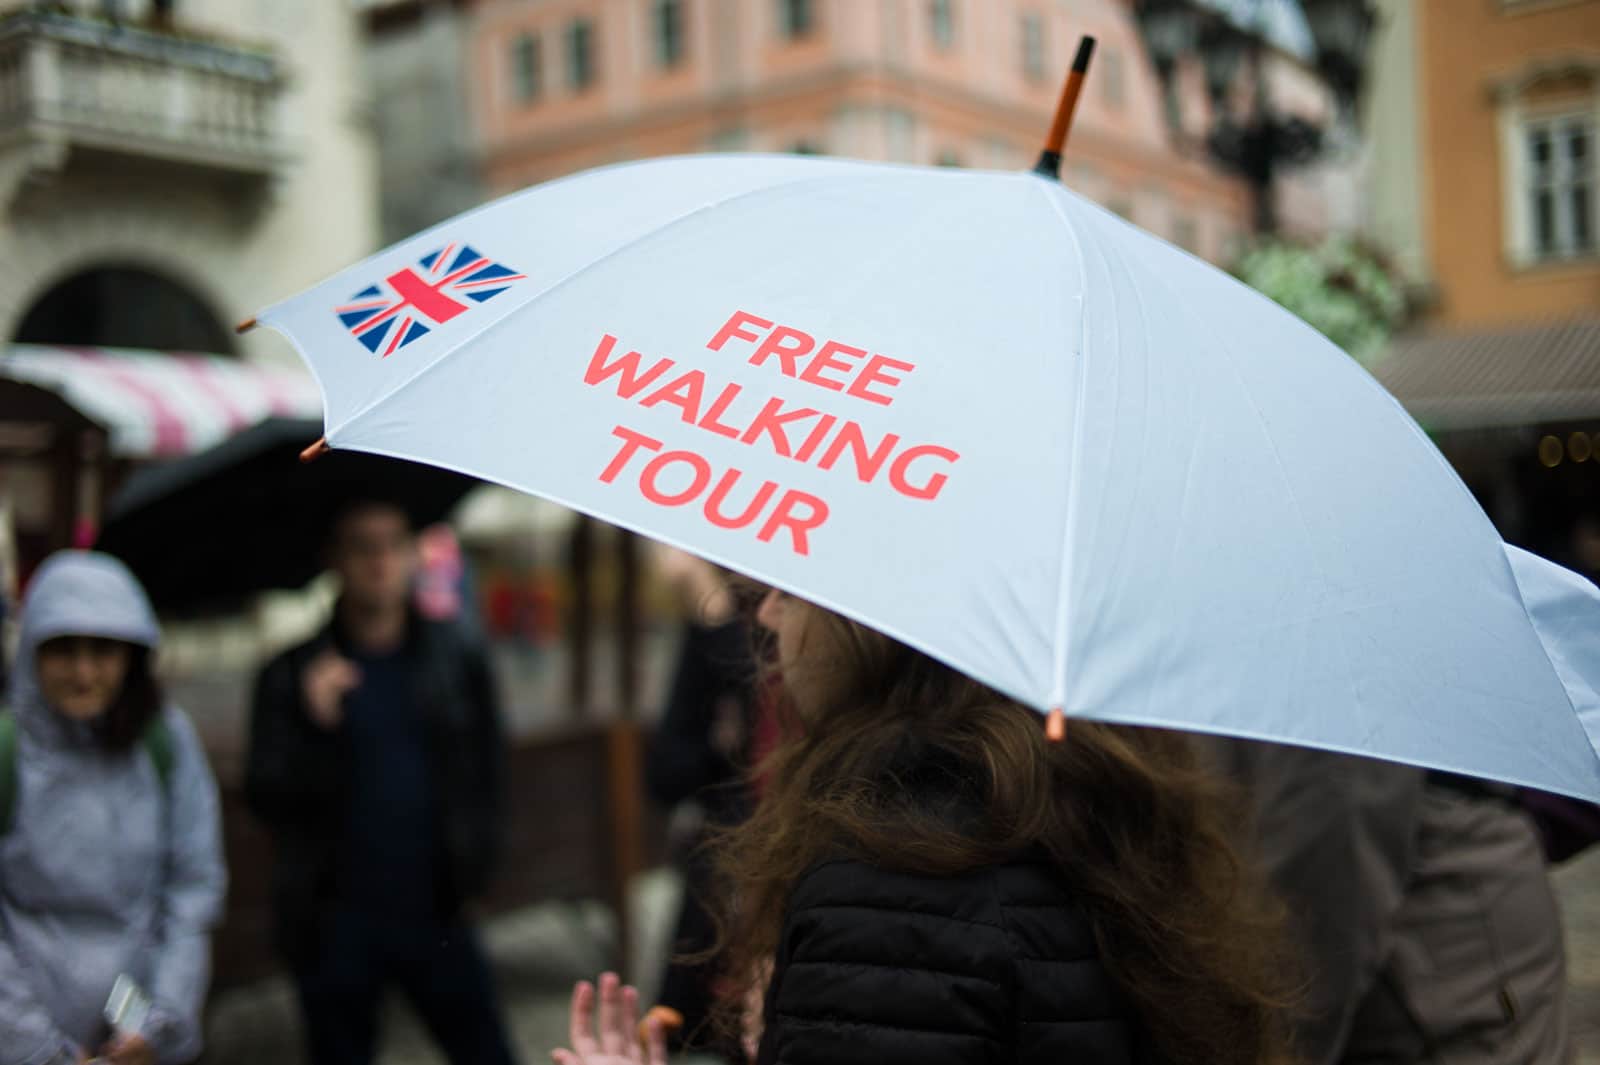 Free walking tour London